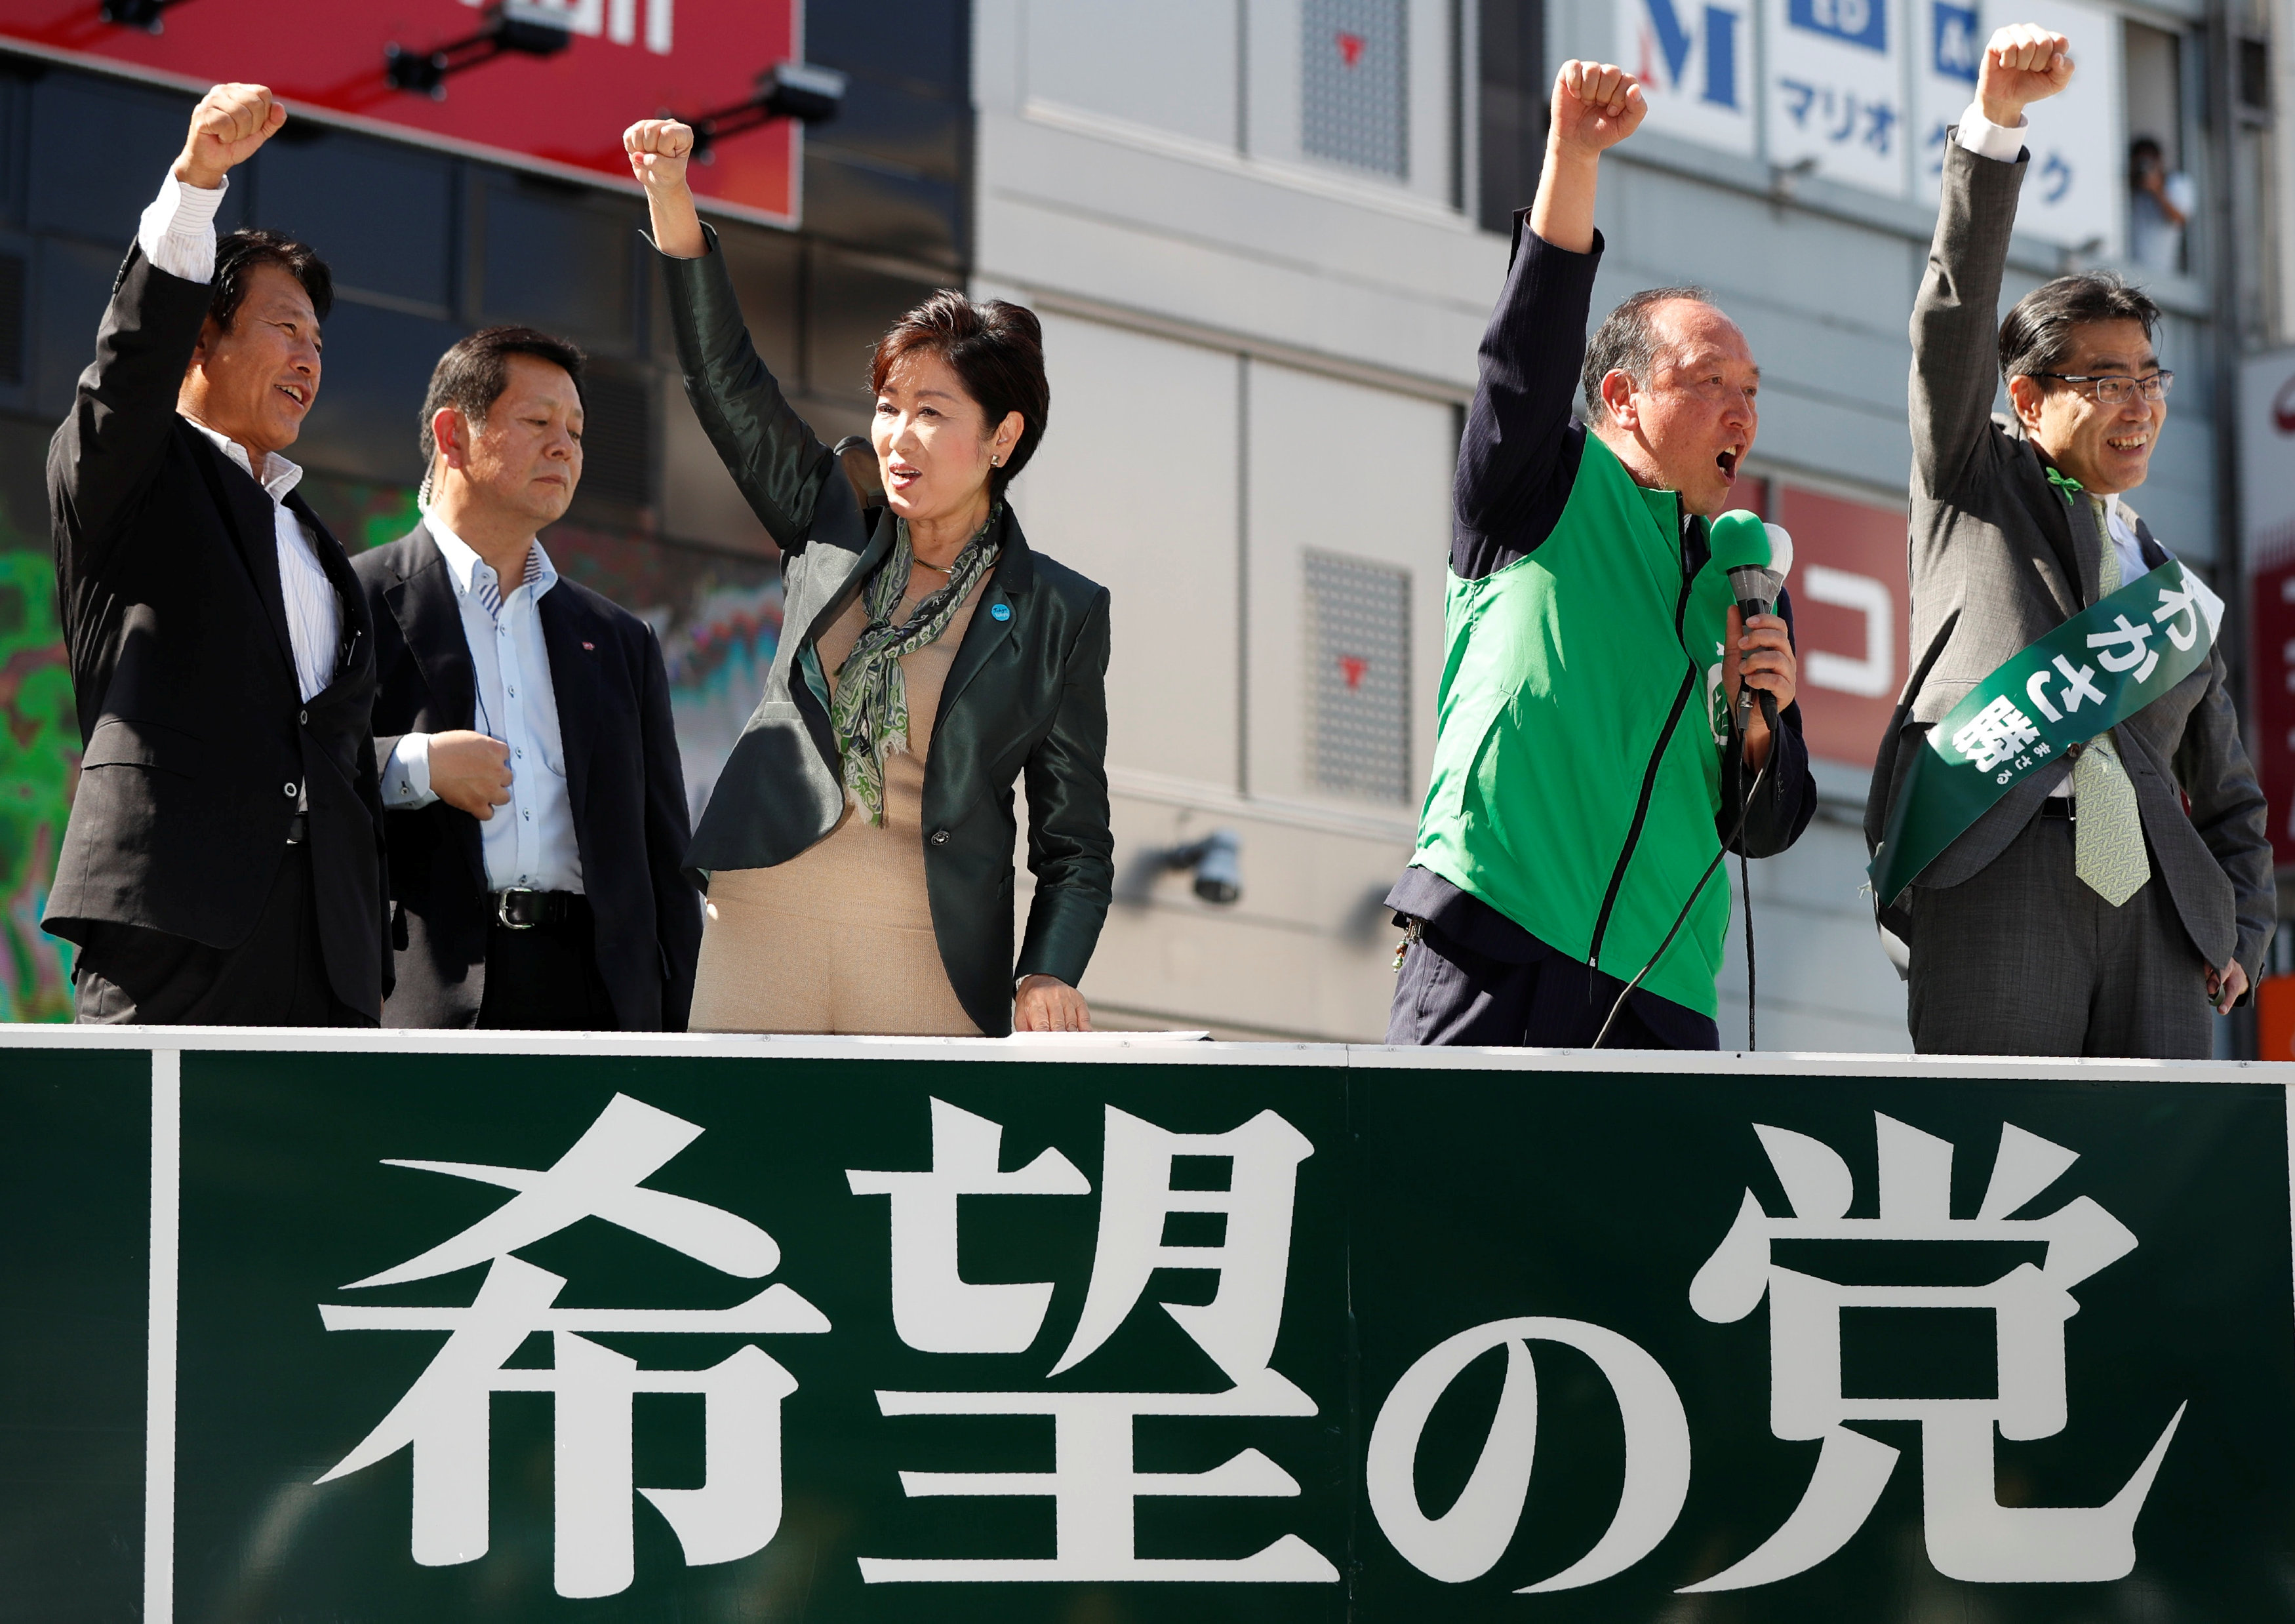 جولة لحاكمة طوكيو استعدادا للانتخابات المبكرة